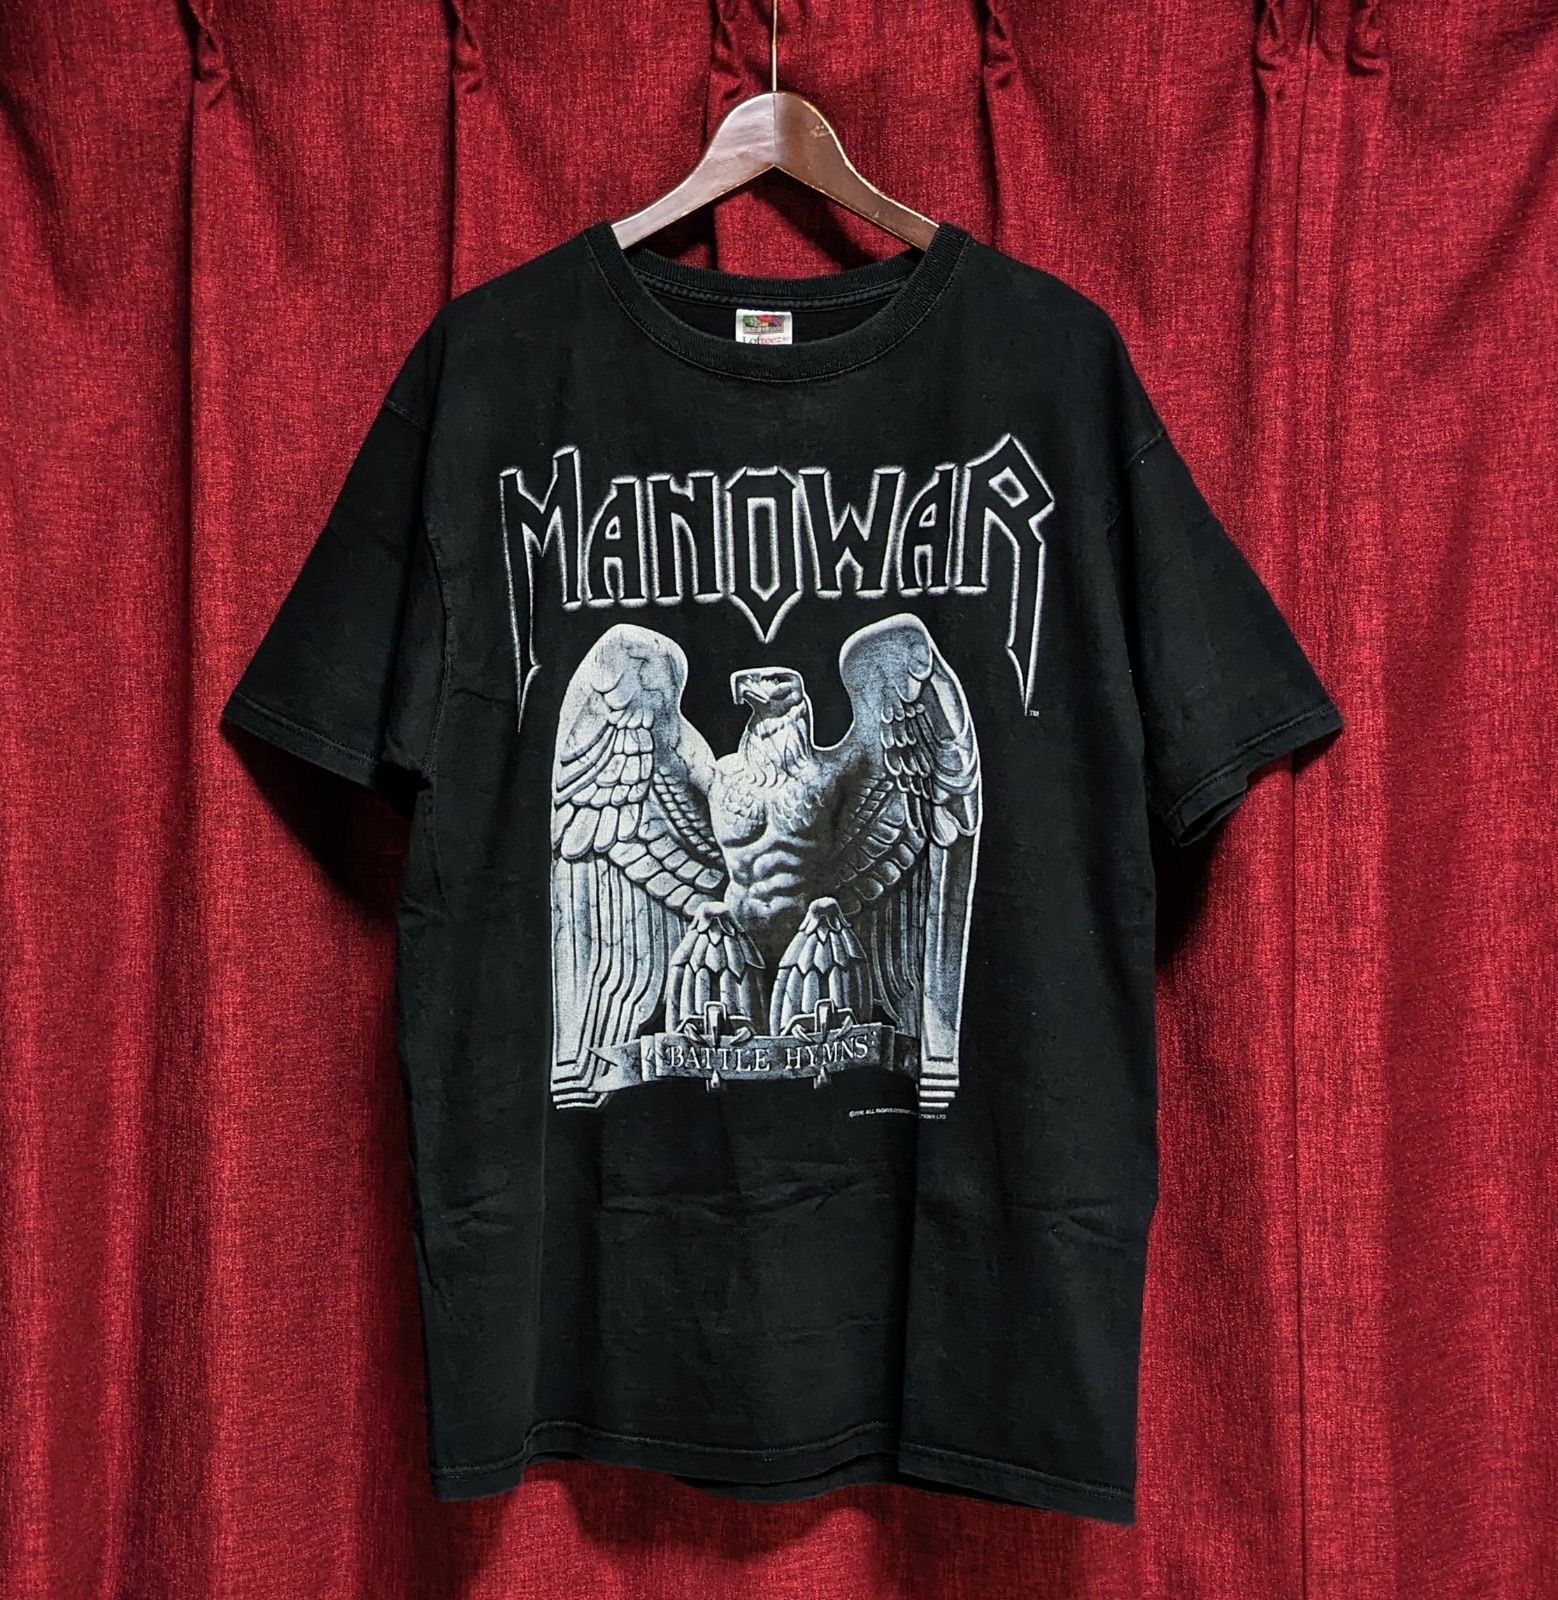 レア ヴィンテージ MANOWAR マノウォー バンドT ロックT メタルT 黒 ブラック XL相当 大きいサイズ 両面プリント 半袖Tシャツ  VINTAGE